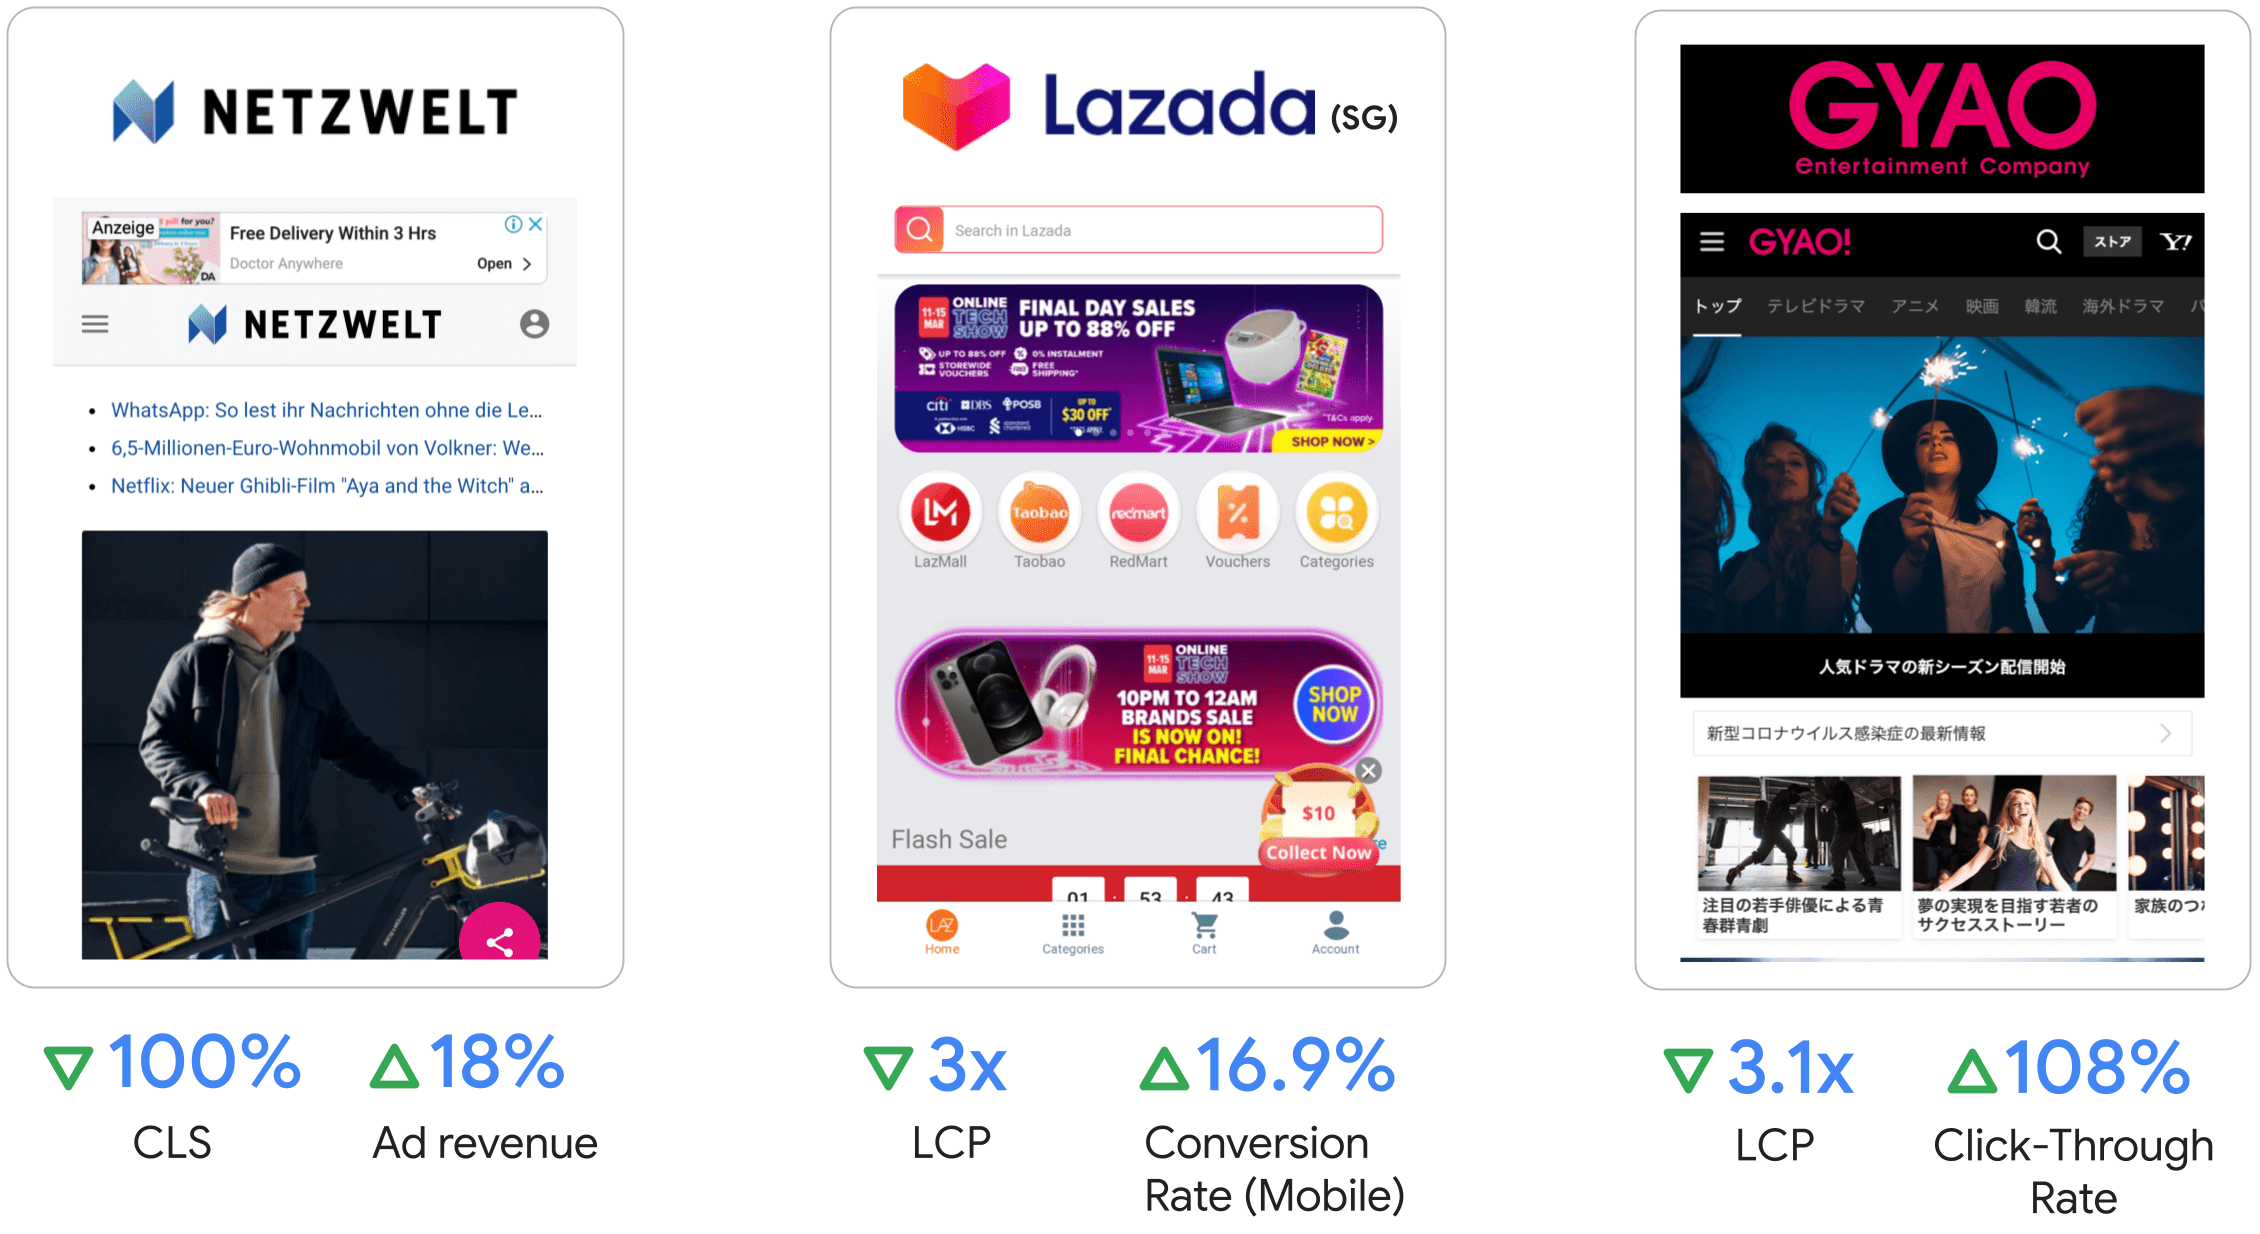 NetzWellt nhận thấy doanh thu quảng cáo tăng 18%, Lazada nhận thấy LCP tăng 3 lần và tỷ lệ chuyển đổi trên thiết bị di động tăng 16,9%, GYAO nhận thấy LCP tăng 3,1 lần và tỷ lệ nhấp tăng 108%